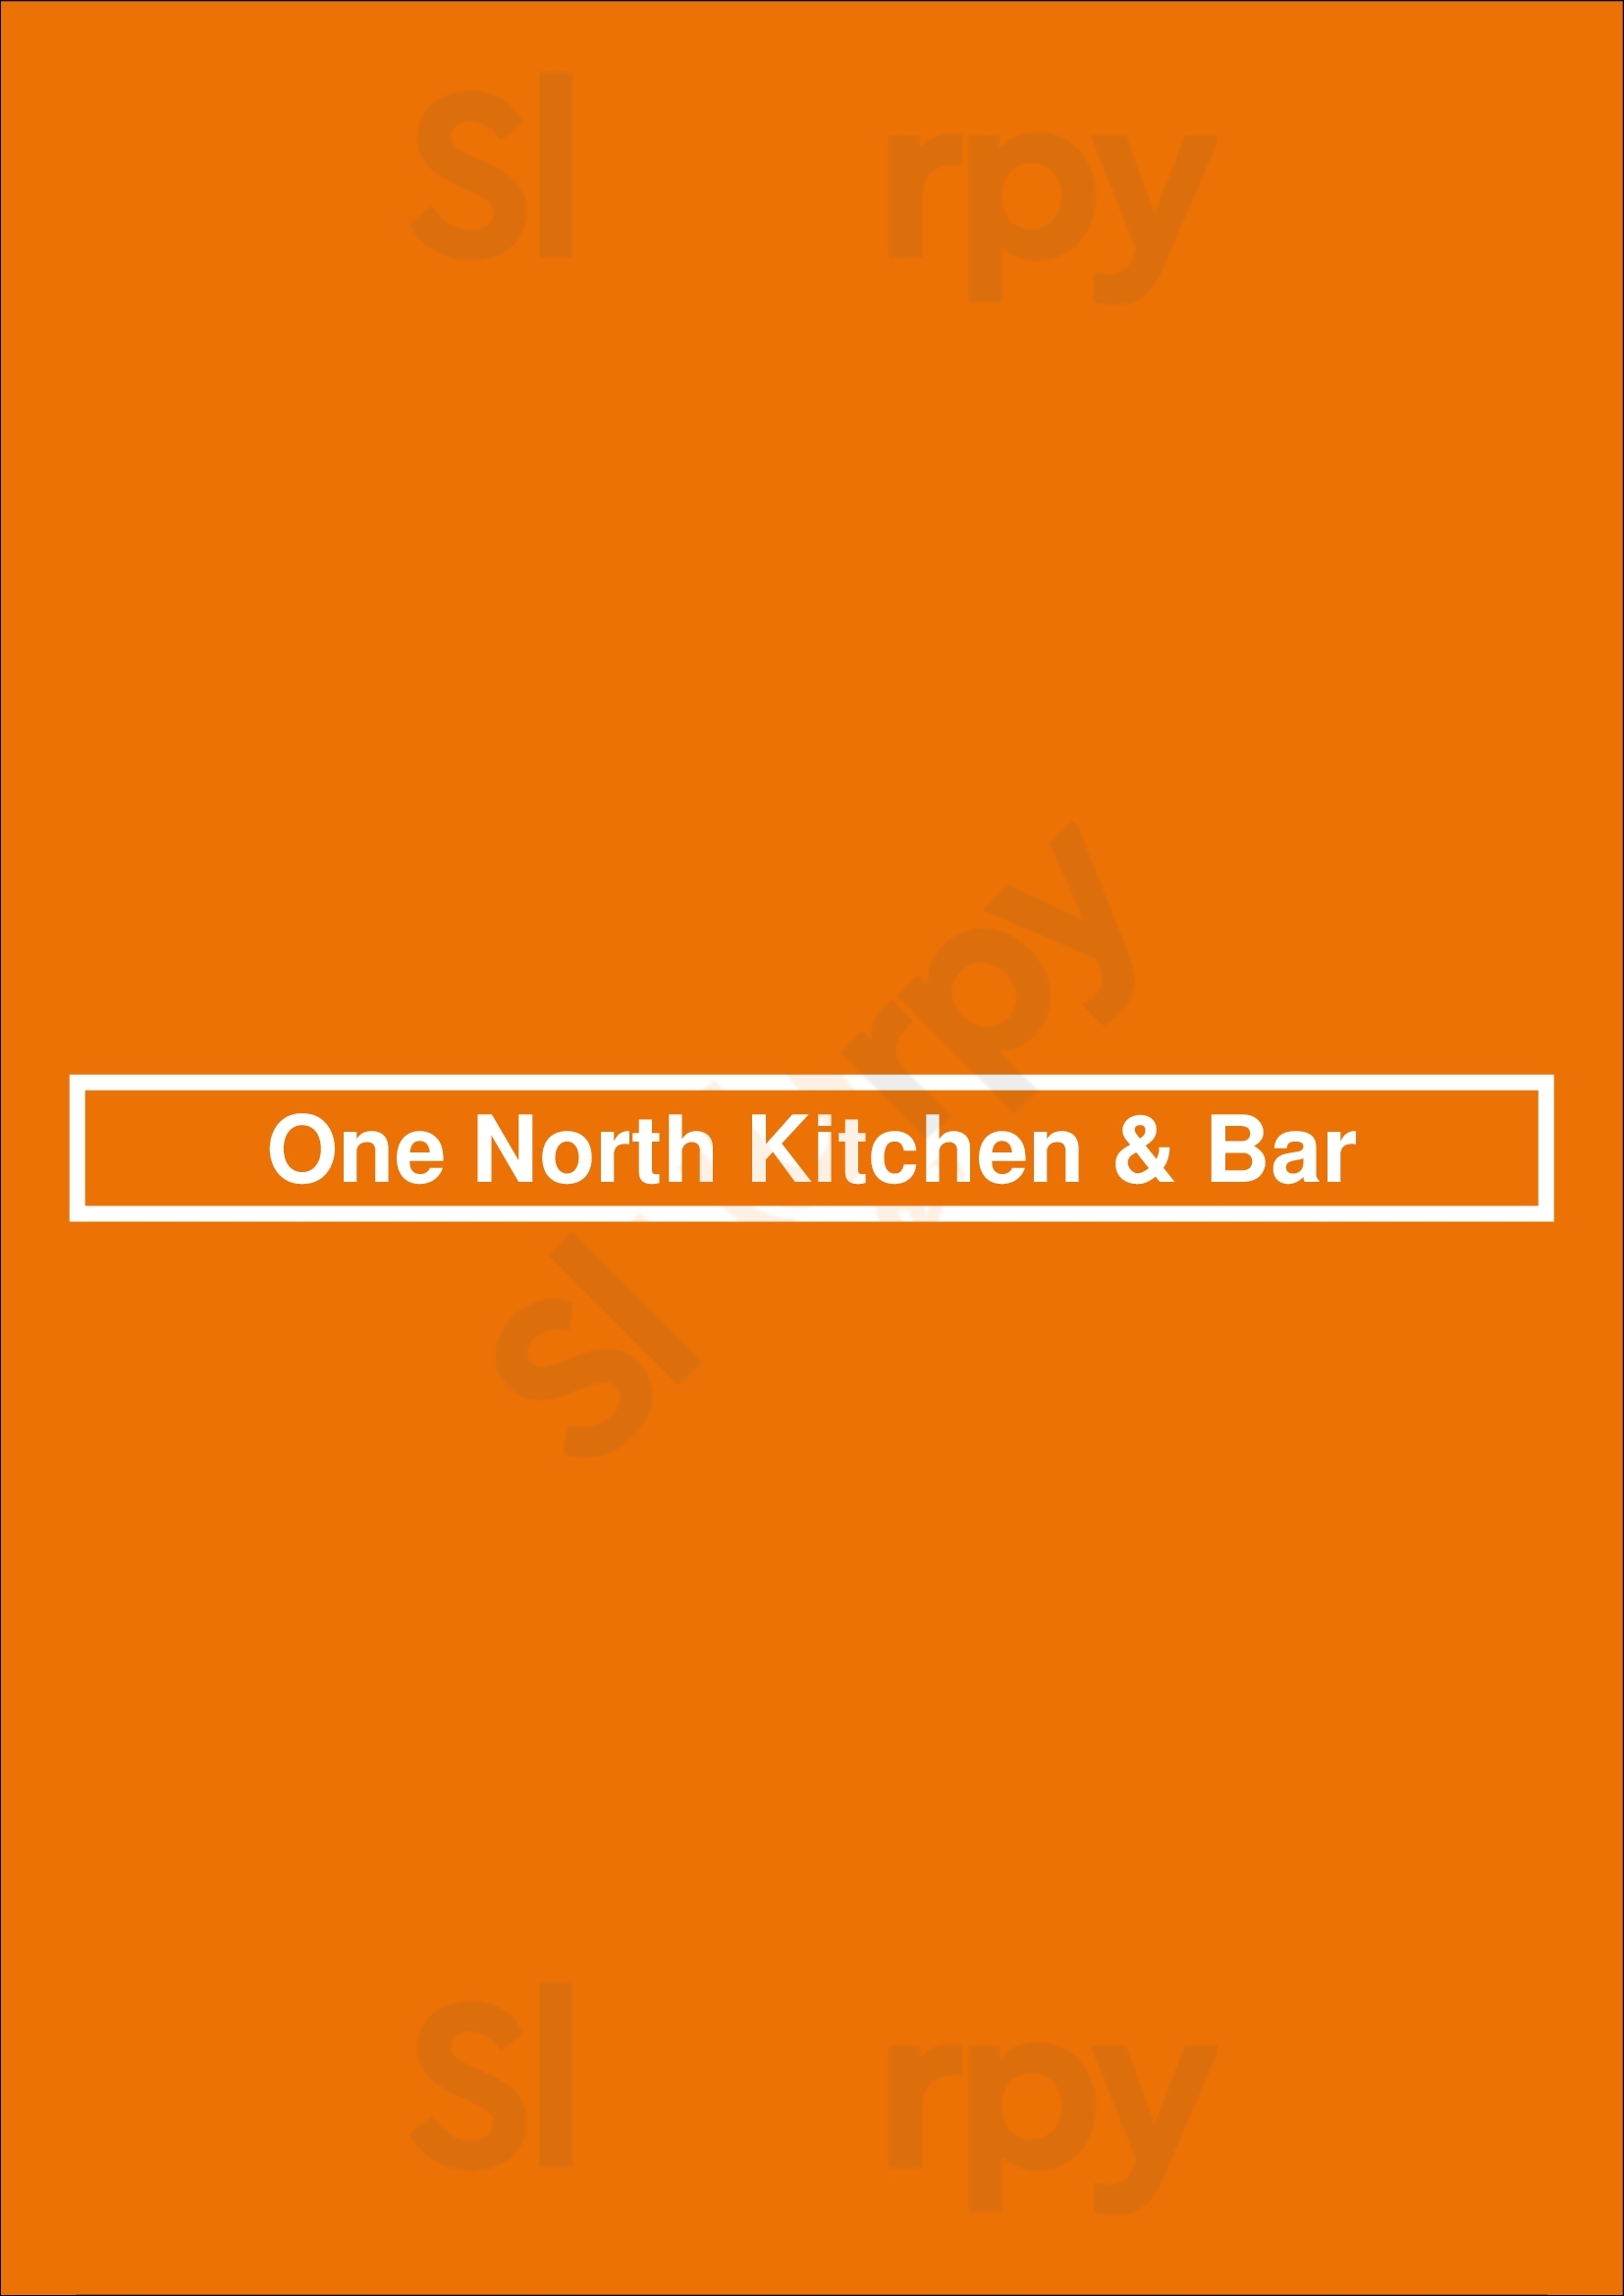 One North Kitchen & Bar Chicago Menu - 1